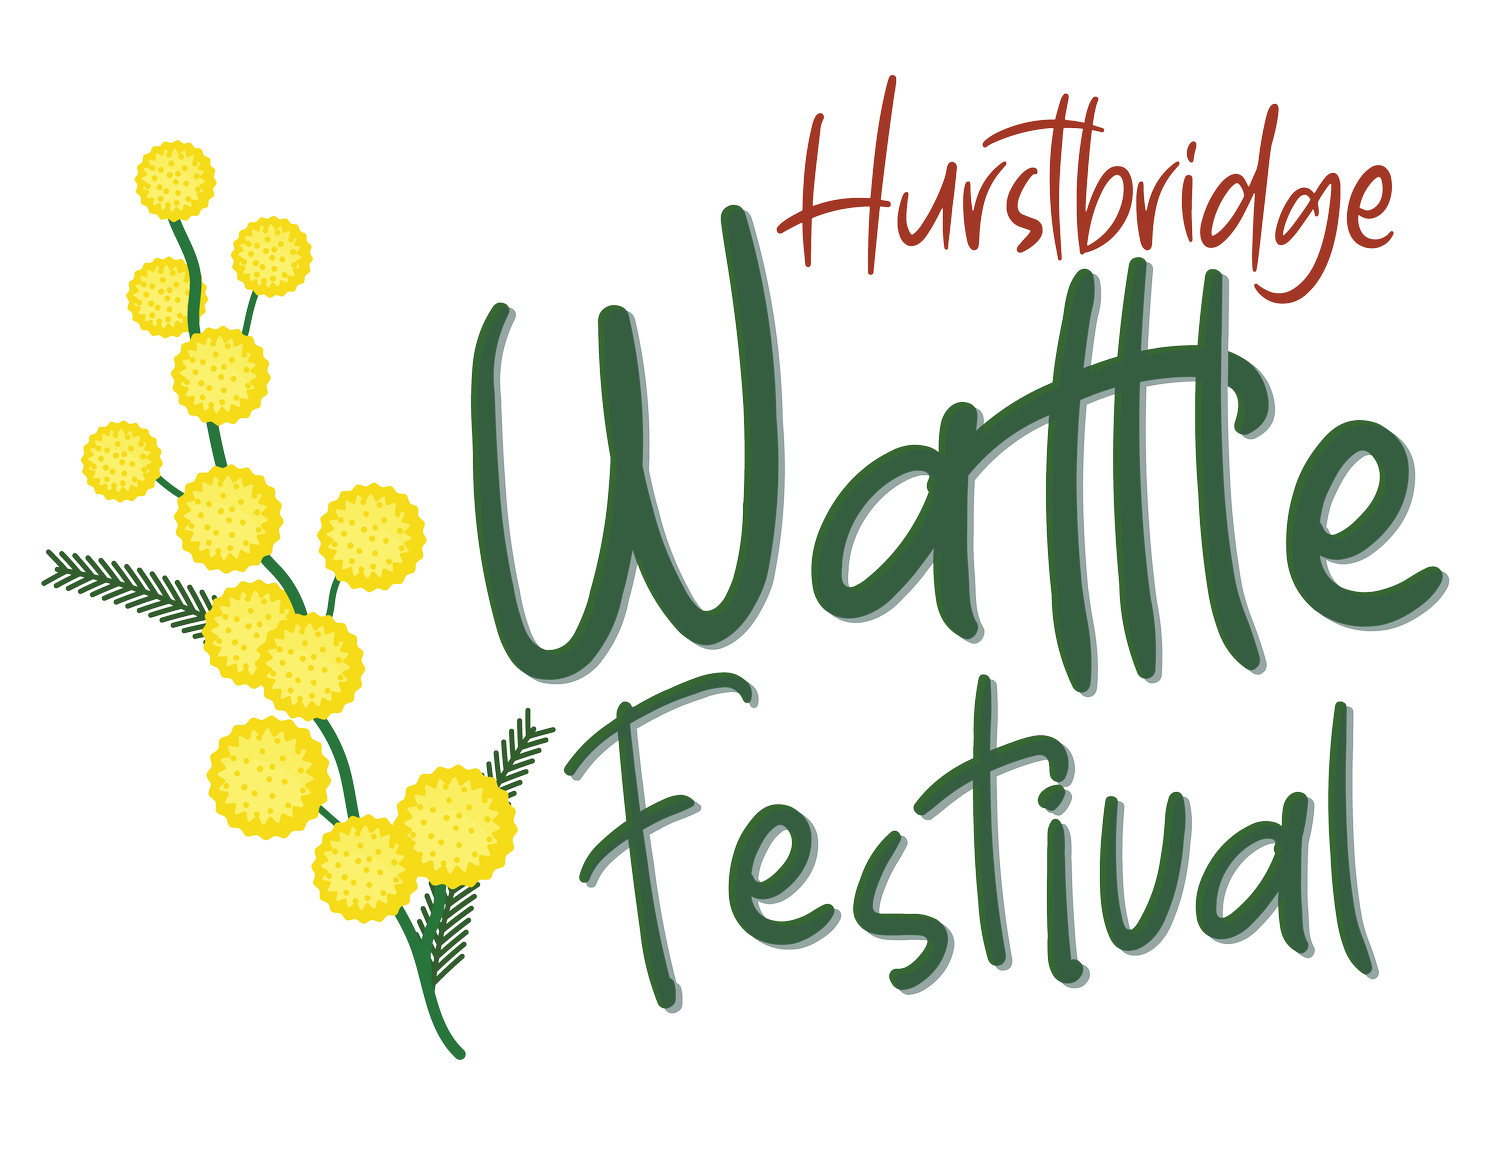 Hurstbridge Wattle Festival